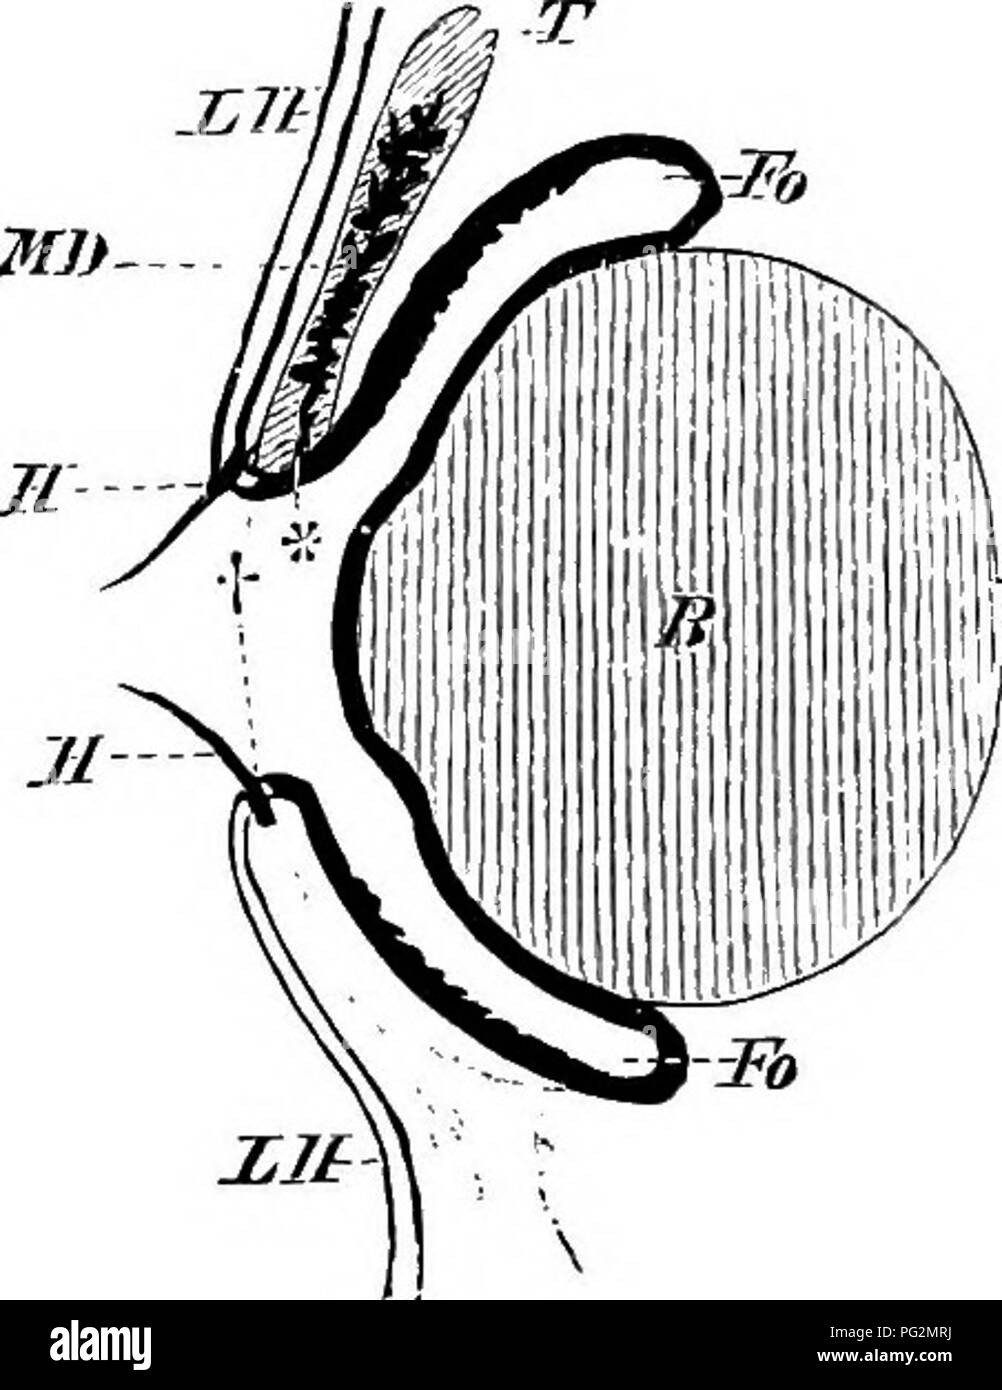 . Elementos de la anatomía comparada de los vertebrados. Anatomía Comparativa. Fig. 173. - H.4kdbkiax glándula (H, H^) .y Glax lagrimal'd [Th) de "Sanguis fraij'dis. M, los músculos de la mandíbula ; B, ojo- bola. M]}- Dipnoans^ el medio exterior parece suficiente para este propósito, pero el primer intento de vertebrados acuáticos para intercambiar una por una antena existencia requirió la ela- boración de un aparato secretora en relación con el ojo. Así, en Urodeles un órgano glandular se desarrolló a partir del epitelio conjuntival a lo largo de toda la longitud de la parte inferior de la tapa del ocular ; en este Keptiles vuelve mote desarrollada Foto de stock